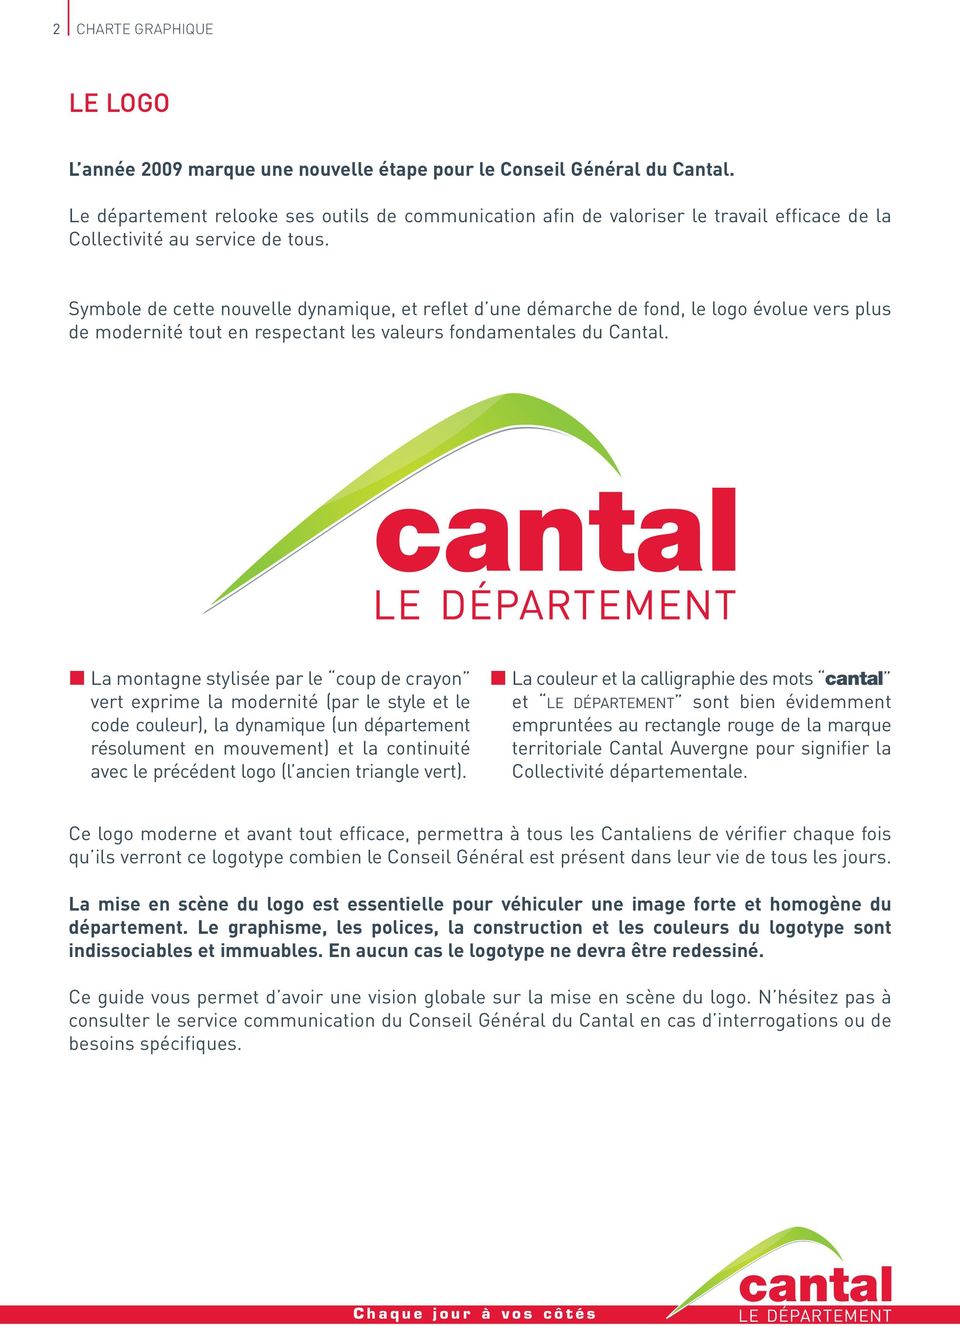 Symbole de cette nouvelle dynamique, et reflet d une démarche de fond, le logo évolue vers plus de modernité tout en respectant les valeurs fondamentales du Cantal.